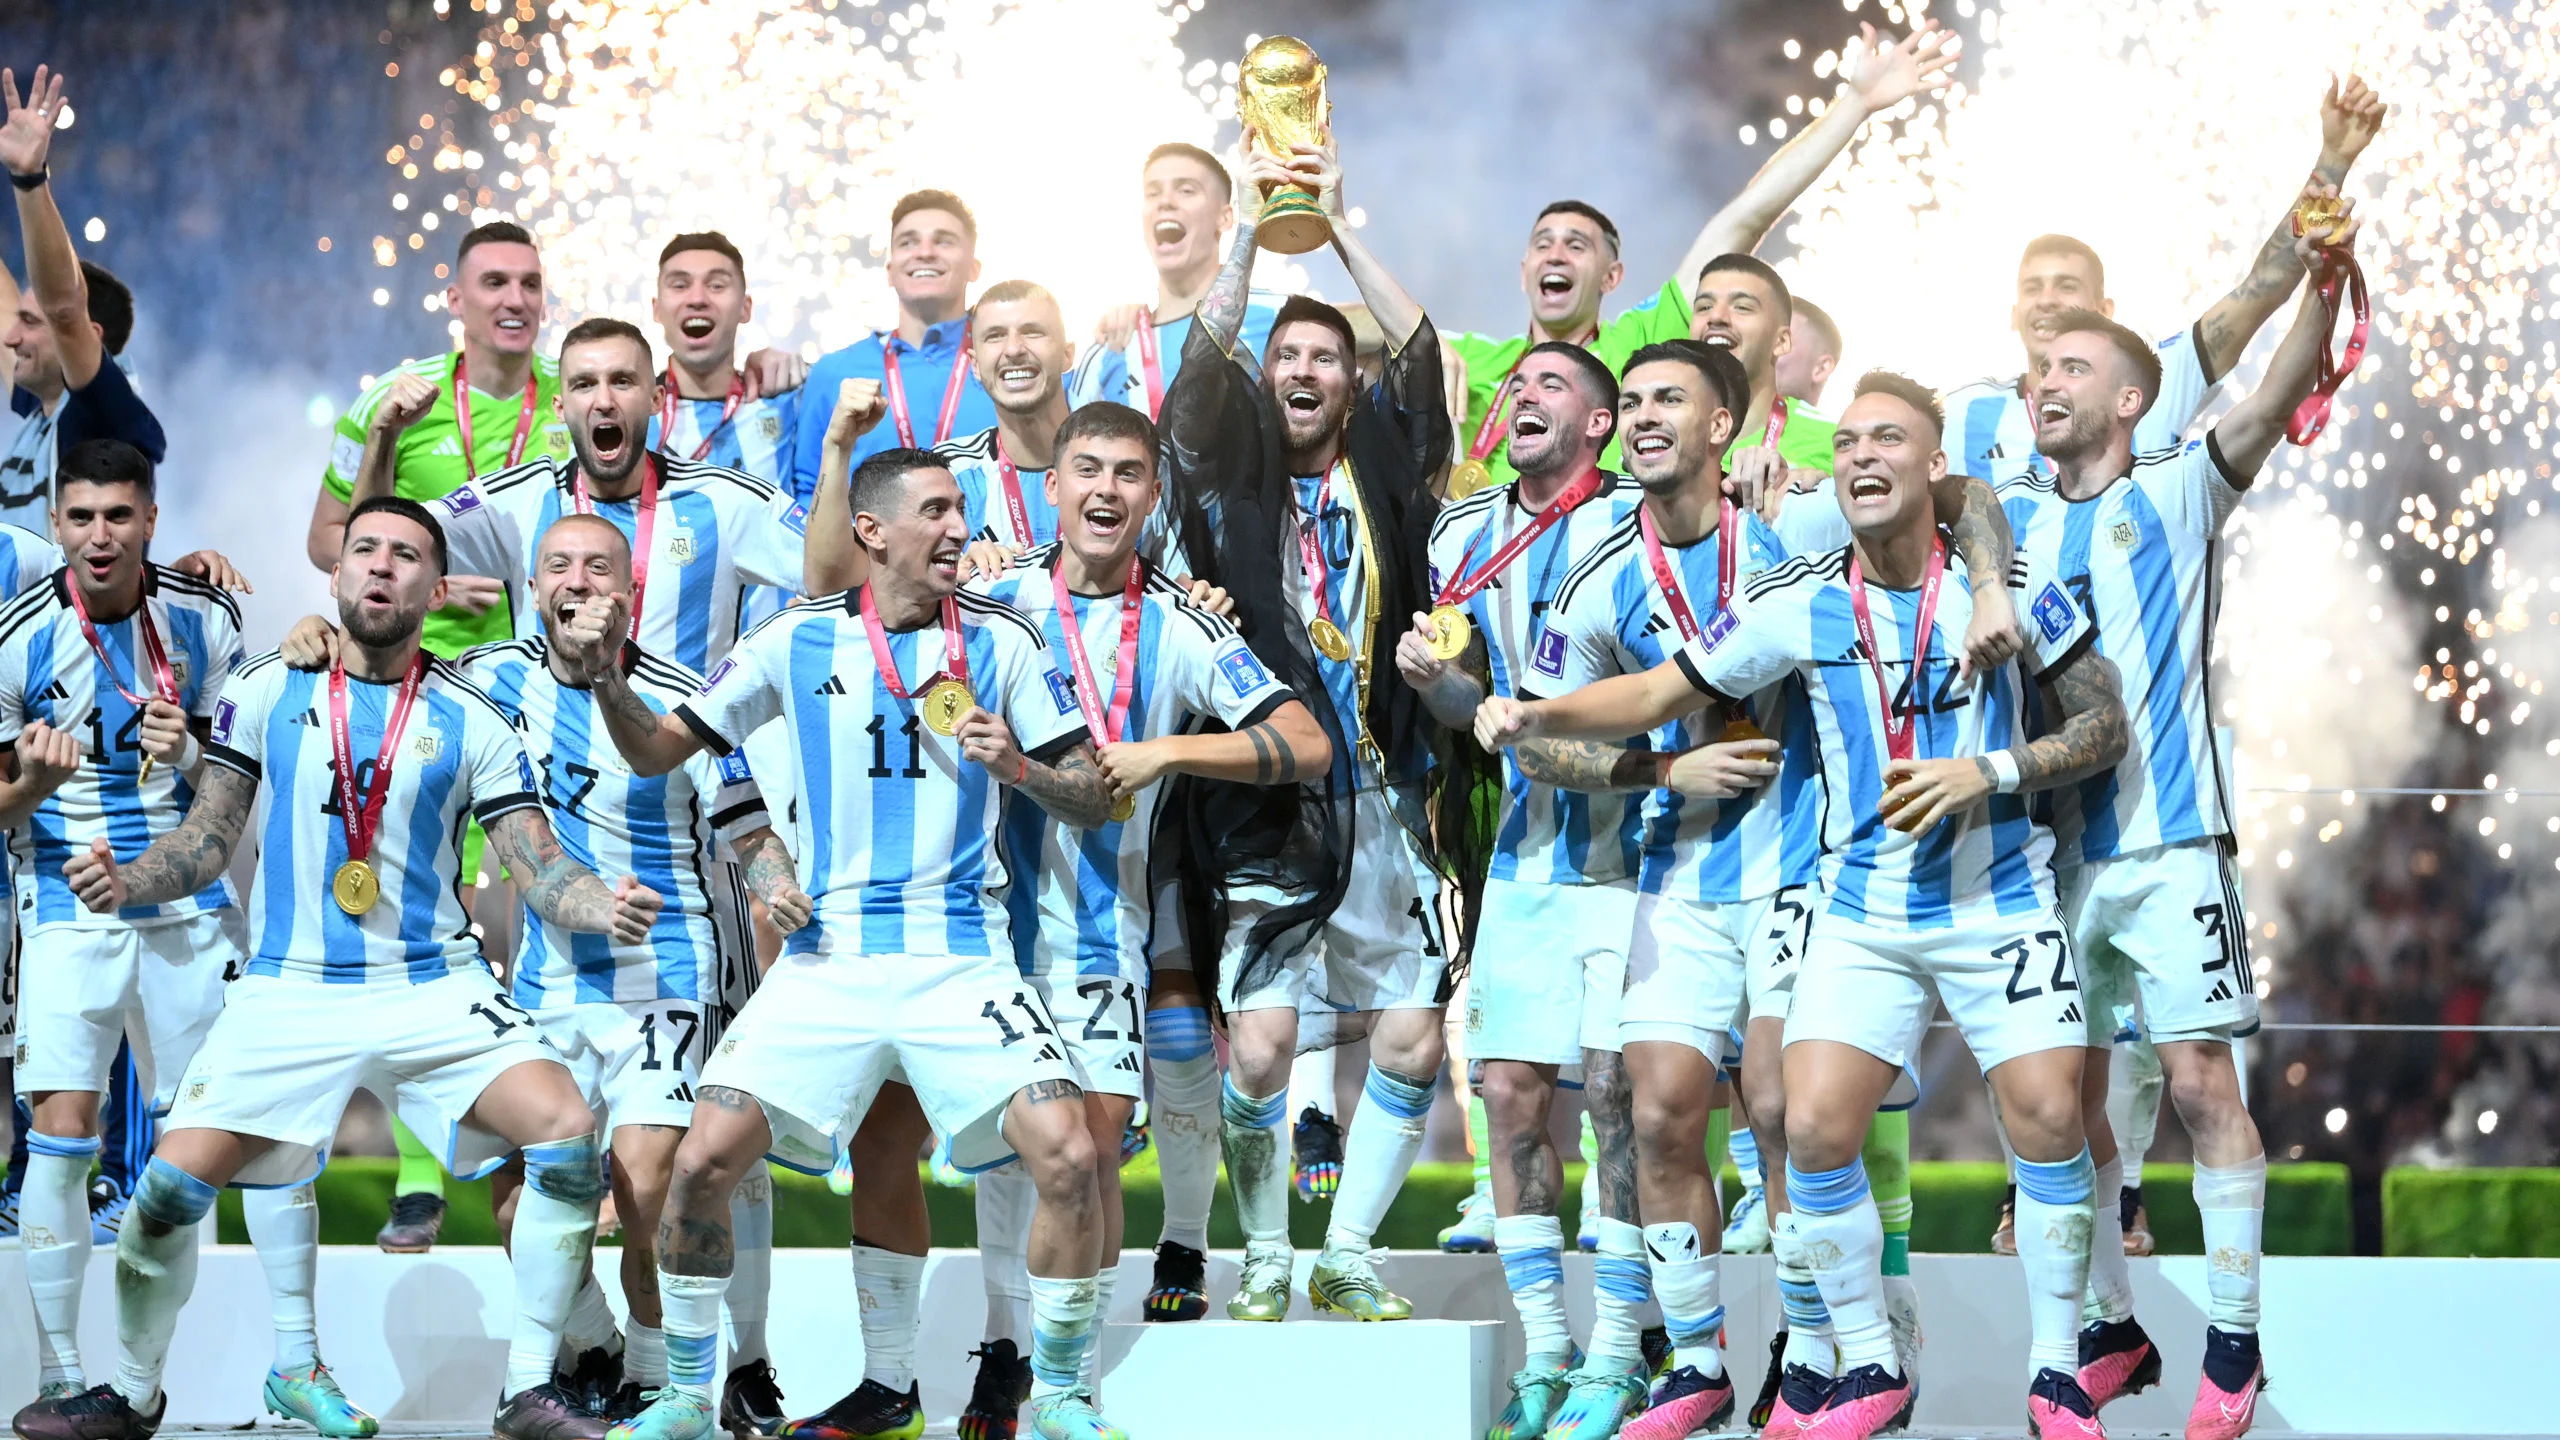 Jogos Eternos - Argentina 3x3 França 2022 - Imortais do Futebol